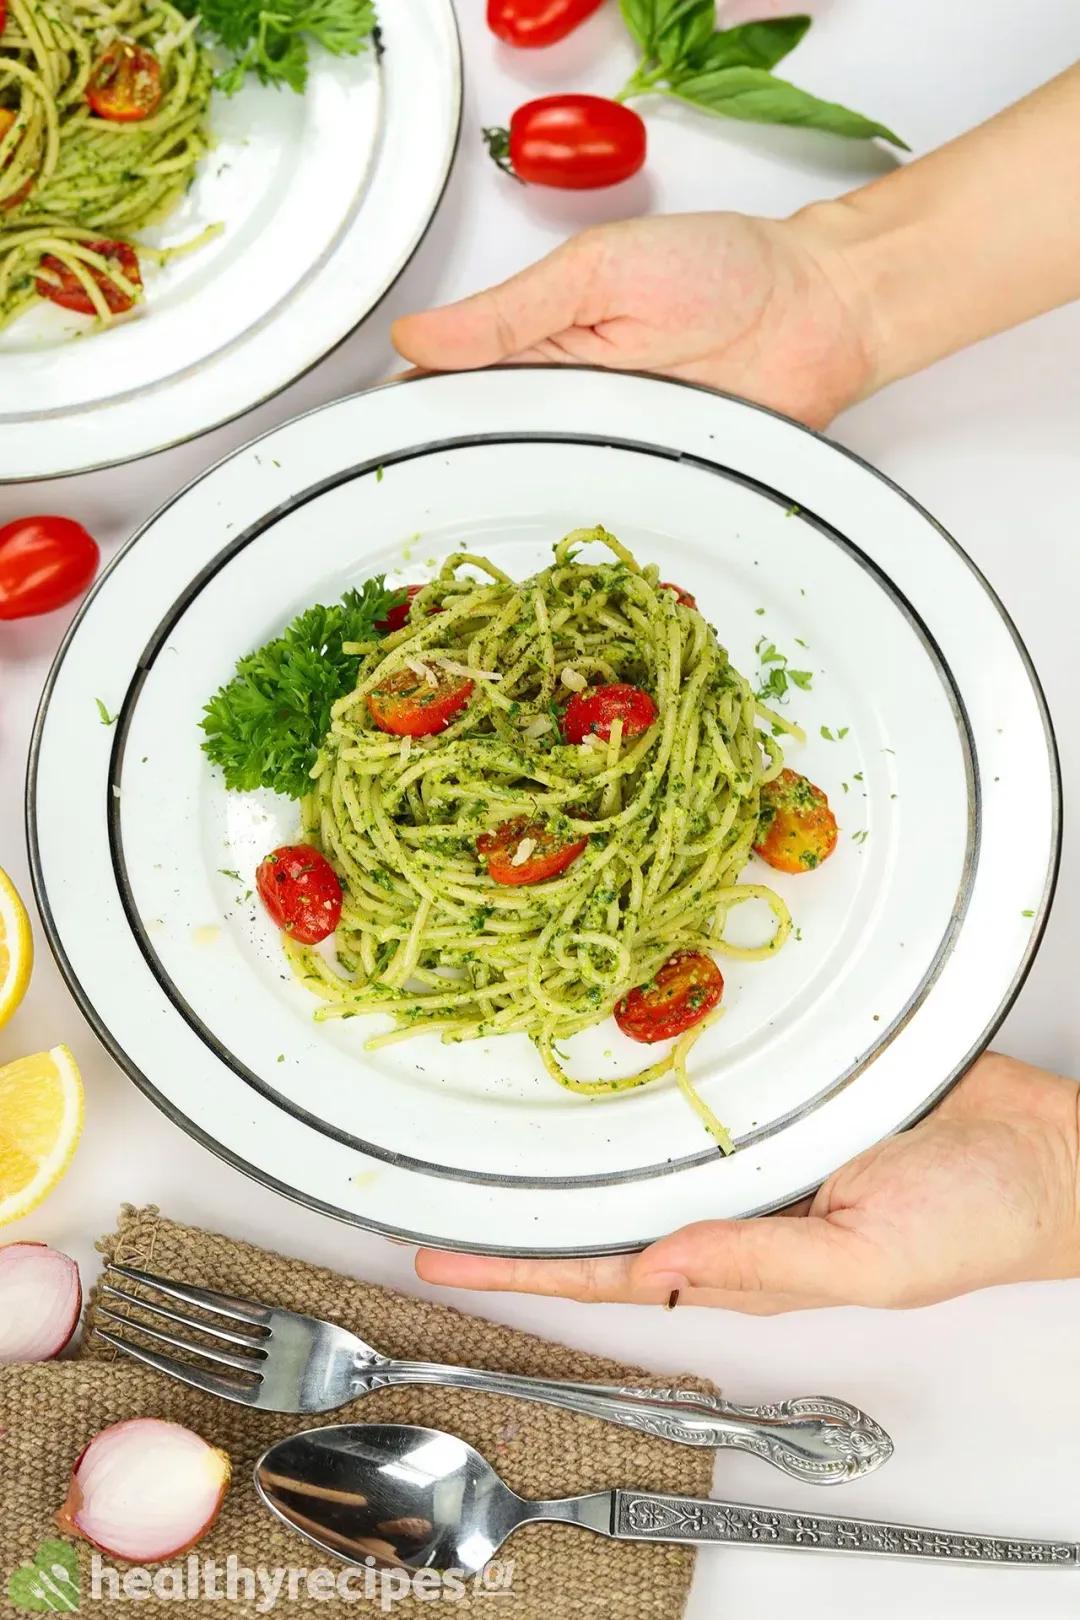 What to Serve With Pesto Spaghetti